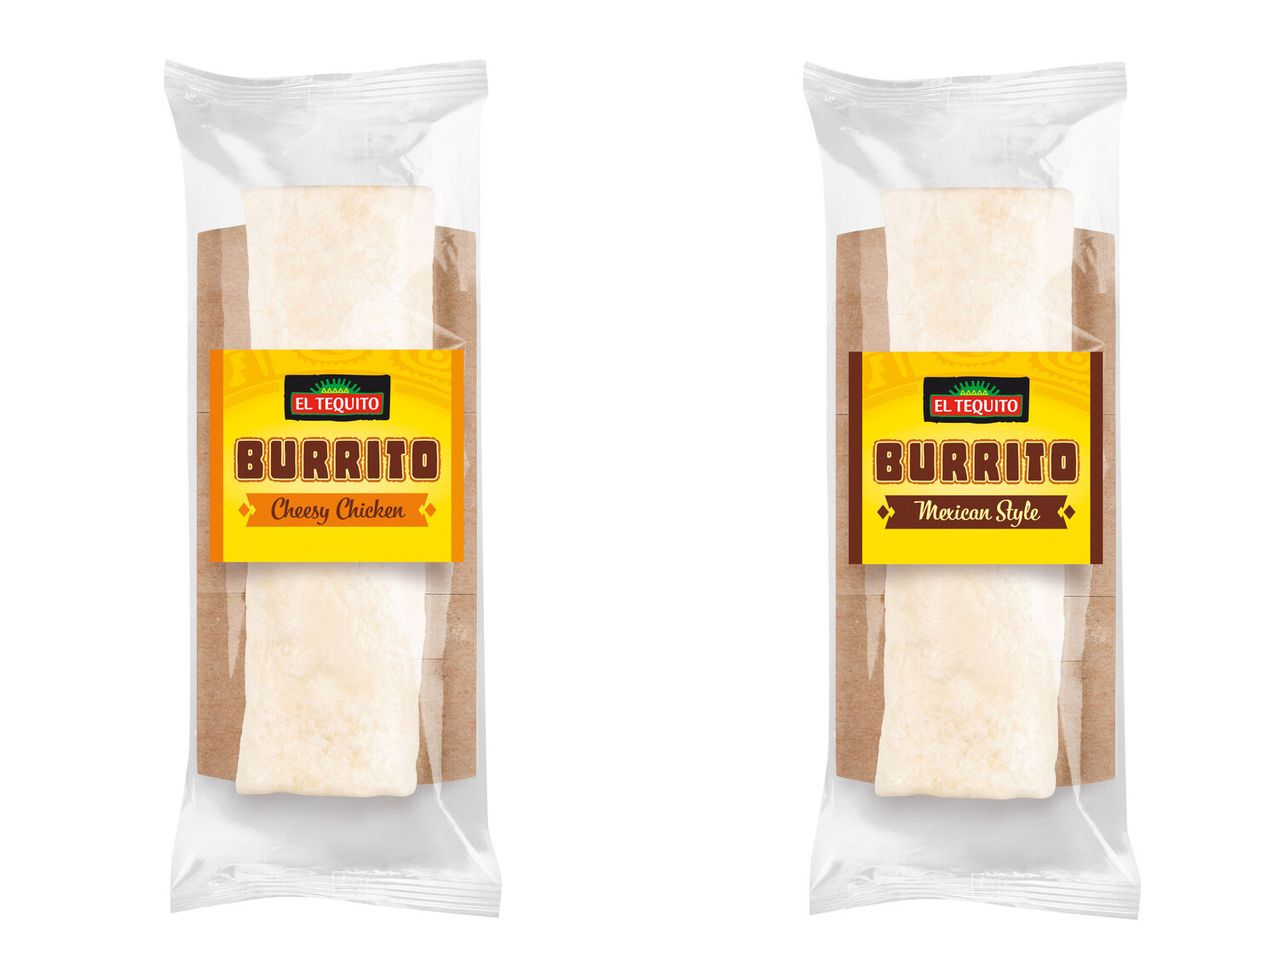 El Burrito Tequito